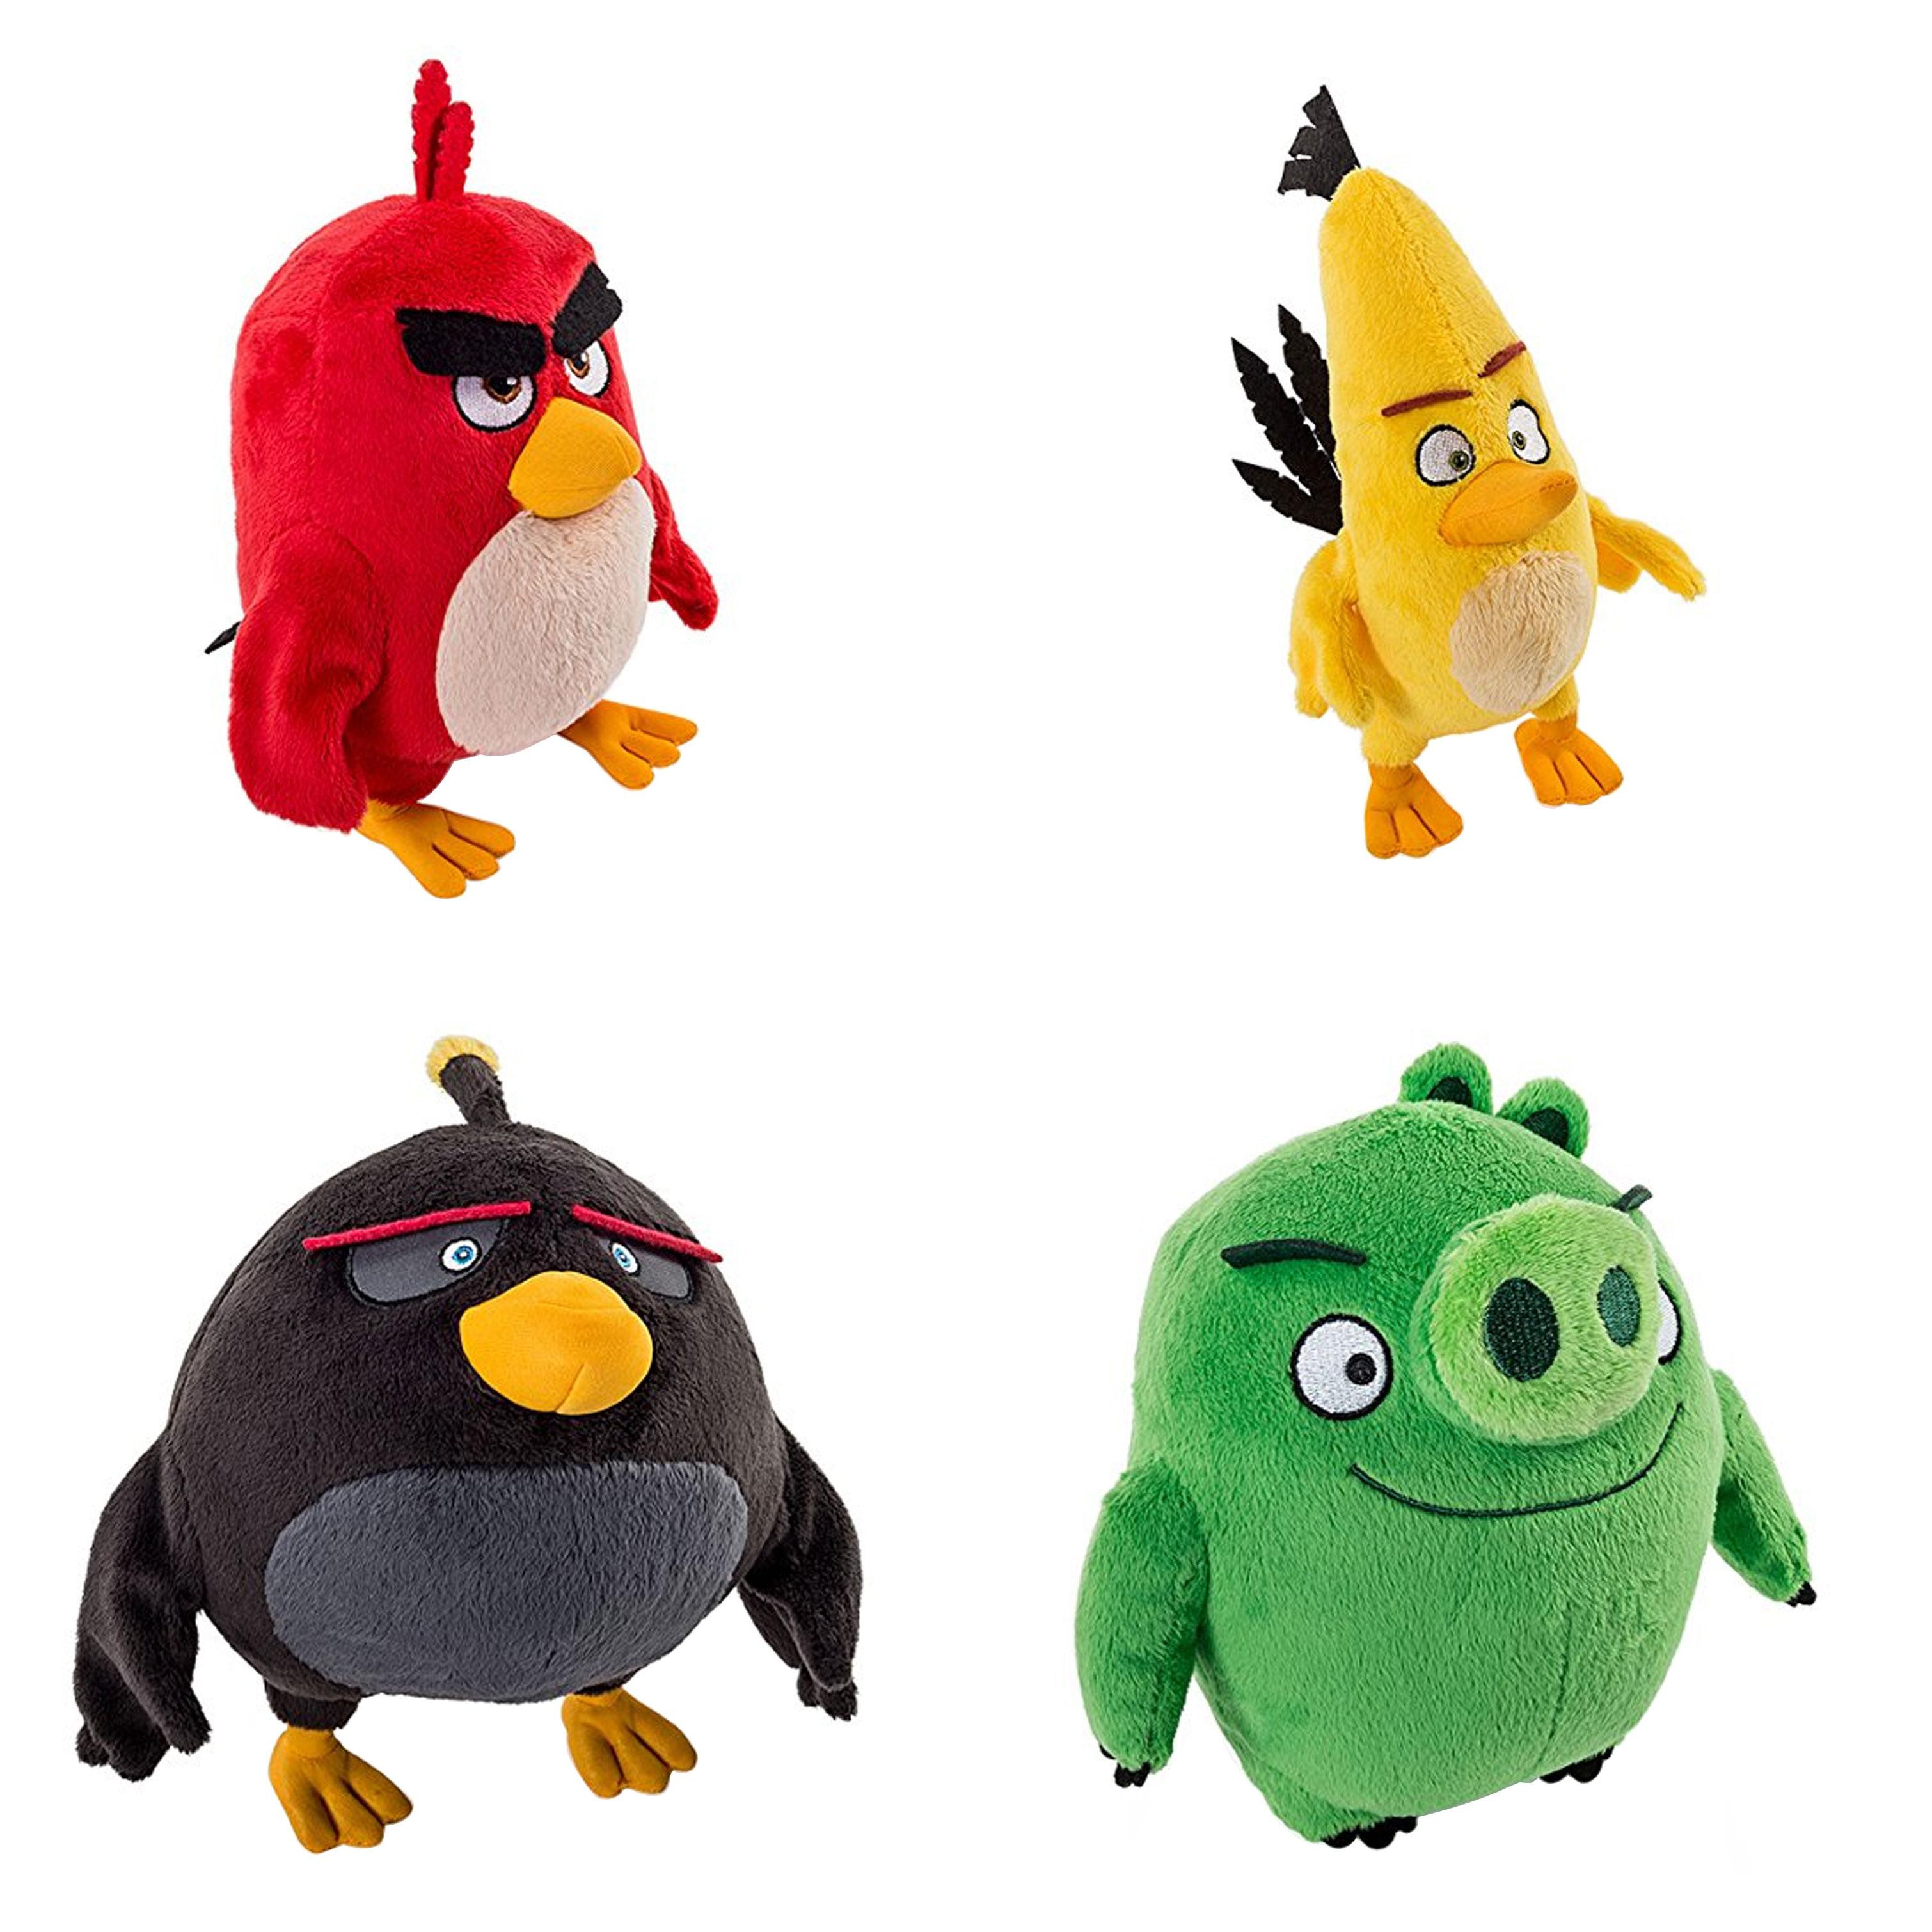 Мягкие игрушки энгри бердз. Игрушки Angry Birds Rovio. Angry Birds плюшевые игрушки Теренс. Angry Birds Теренс мягкая игрушка. Angry Birds плюшевые игрушки Баблз.